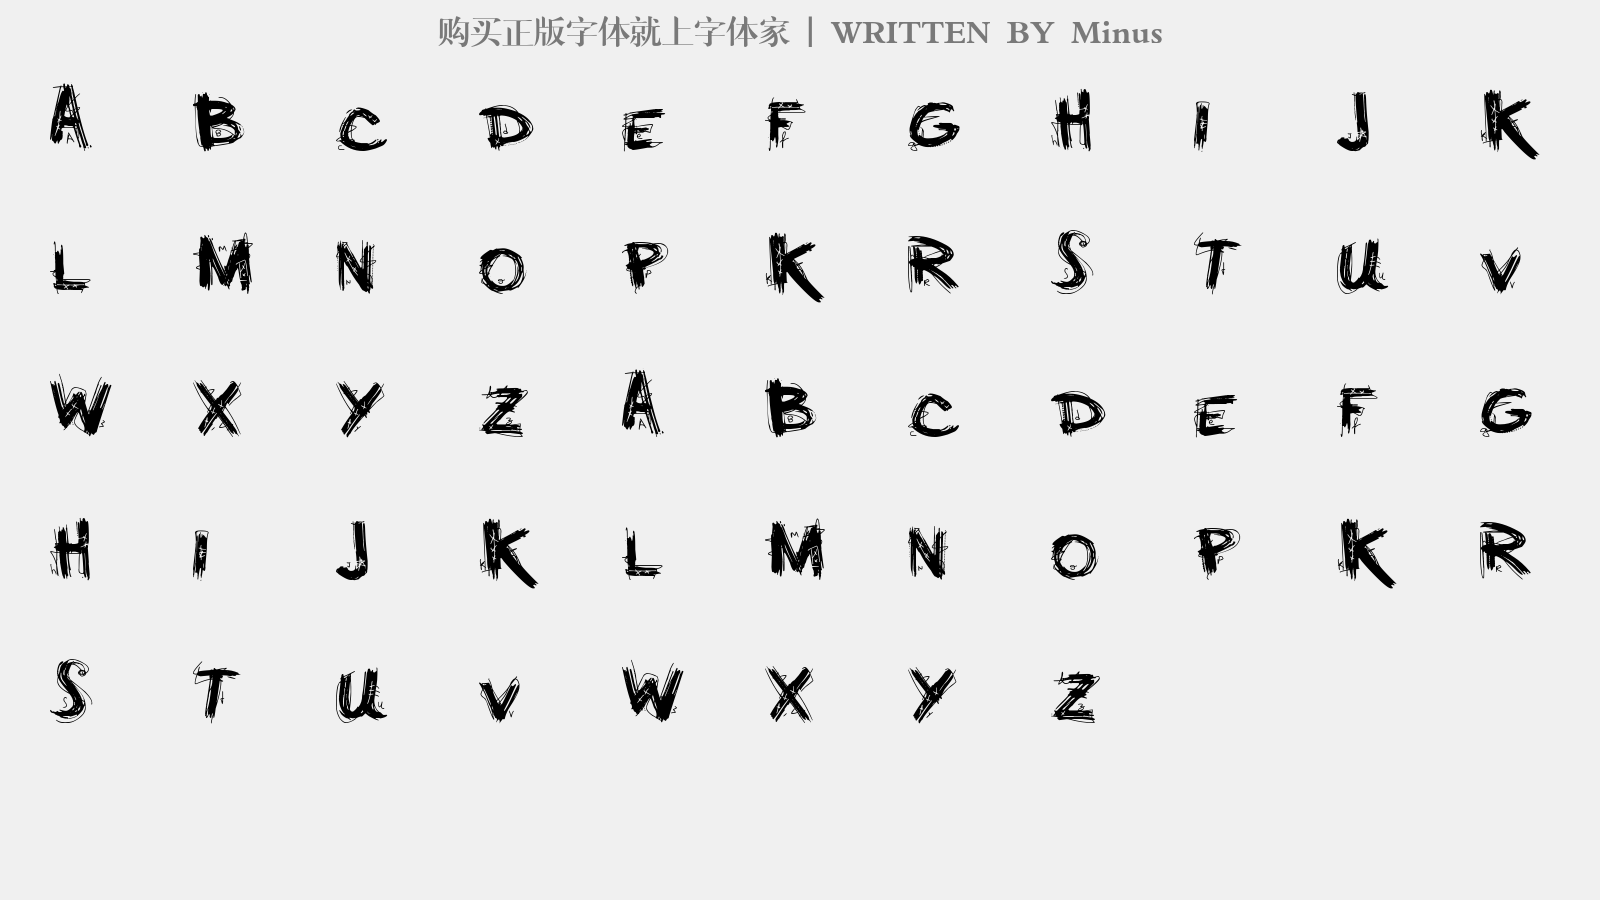 Minus - 大写字母/小写字母/数字